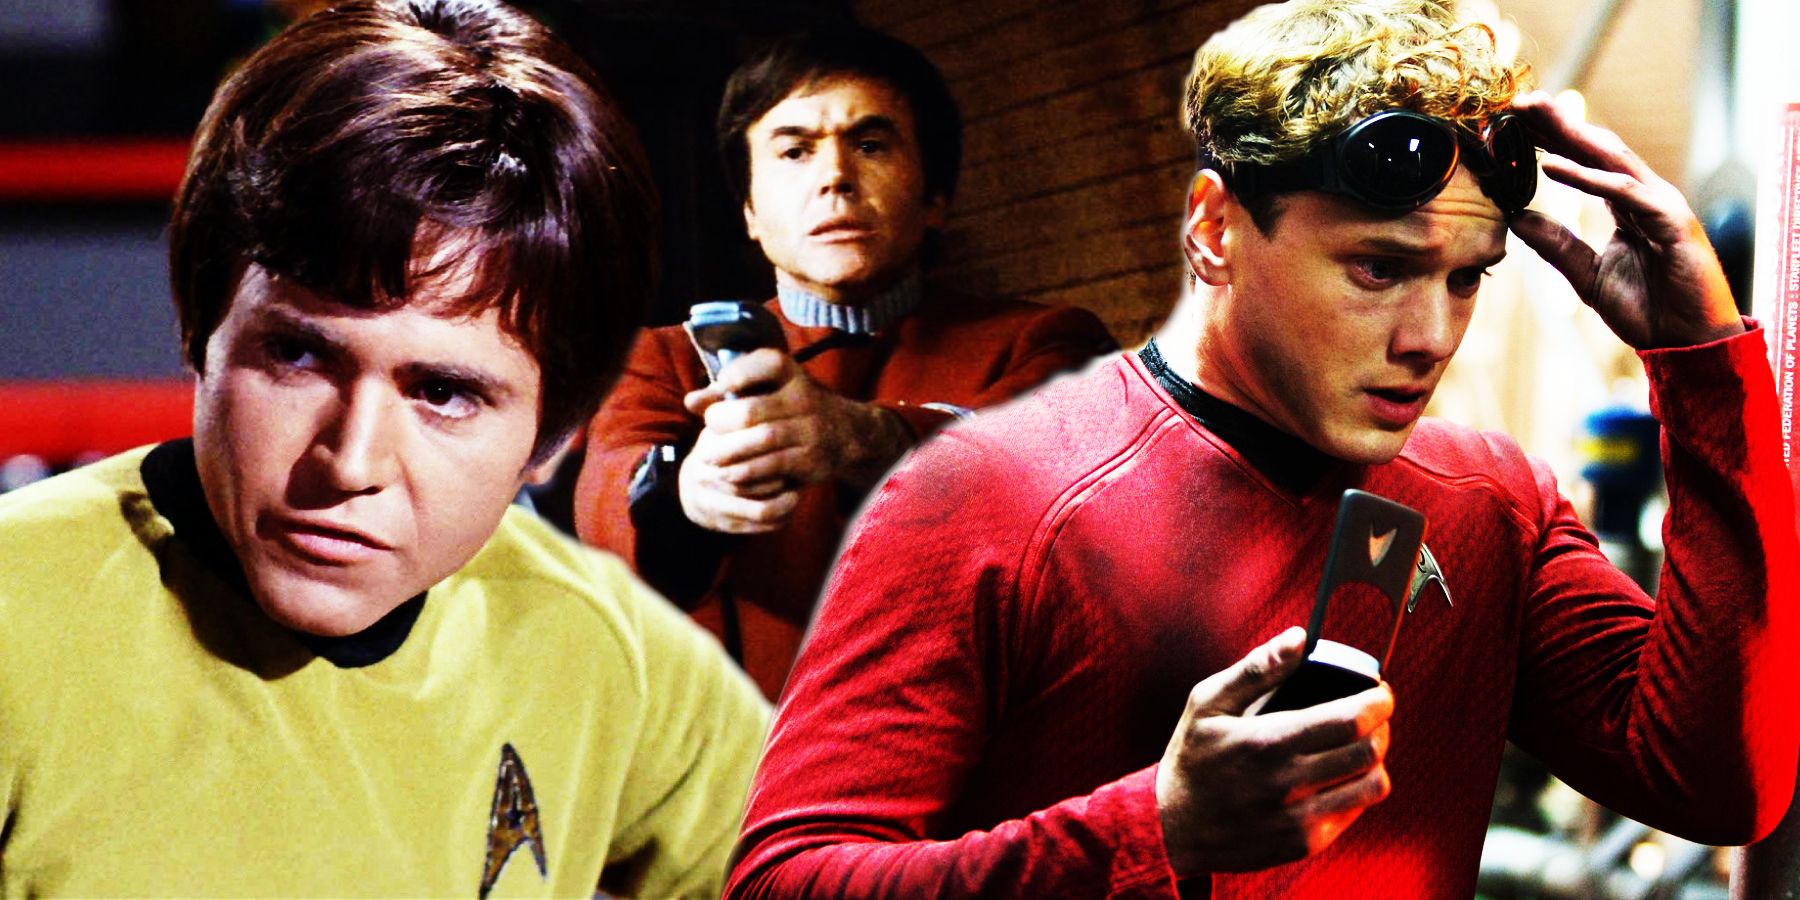 Walter Koenig and Anton Yelchin as Chekov in Star Trek